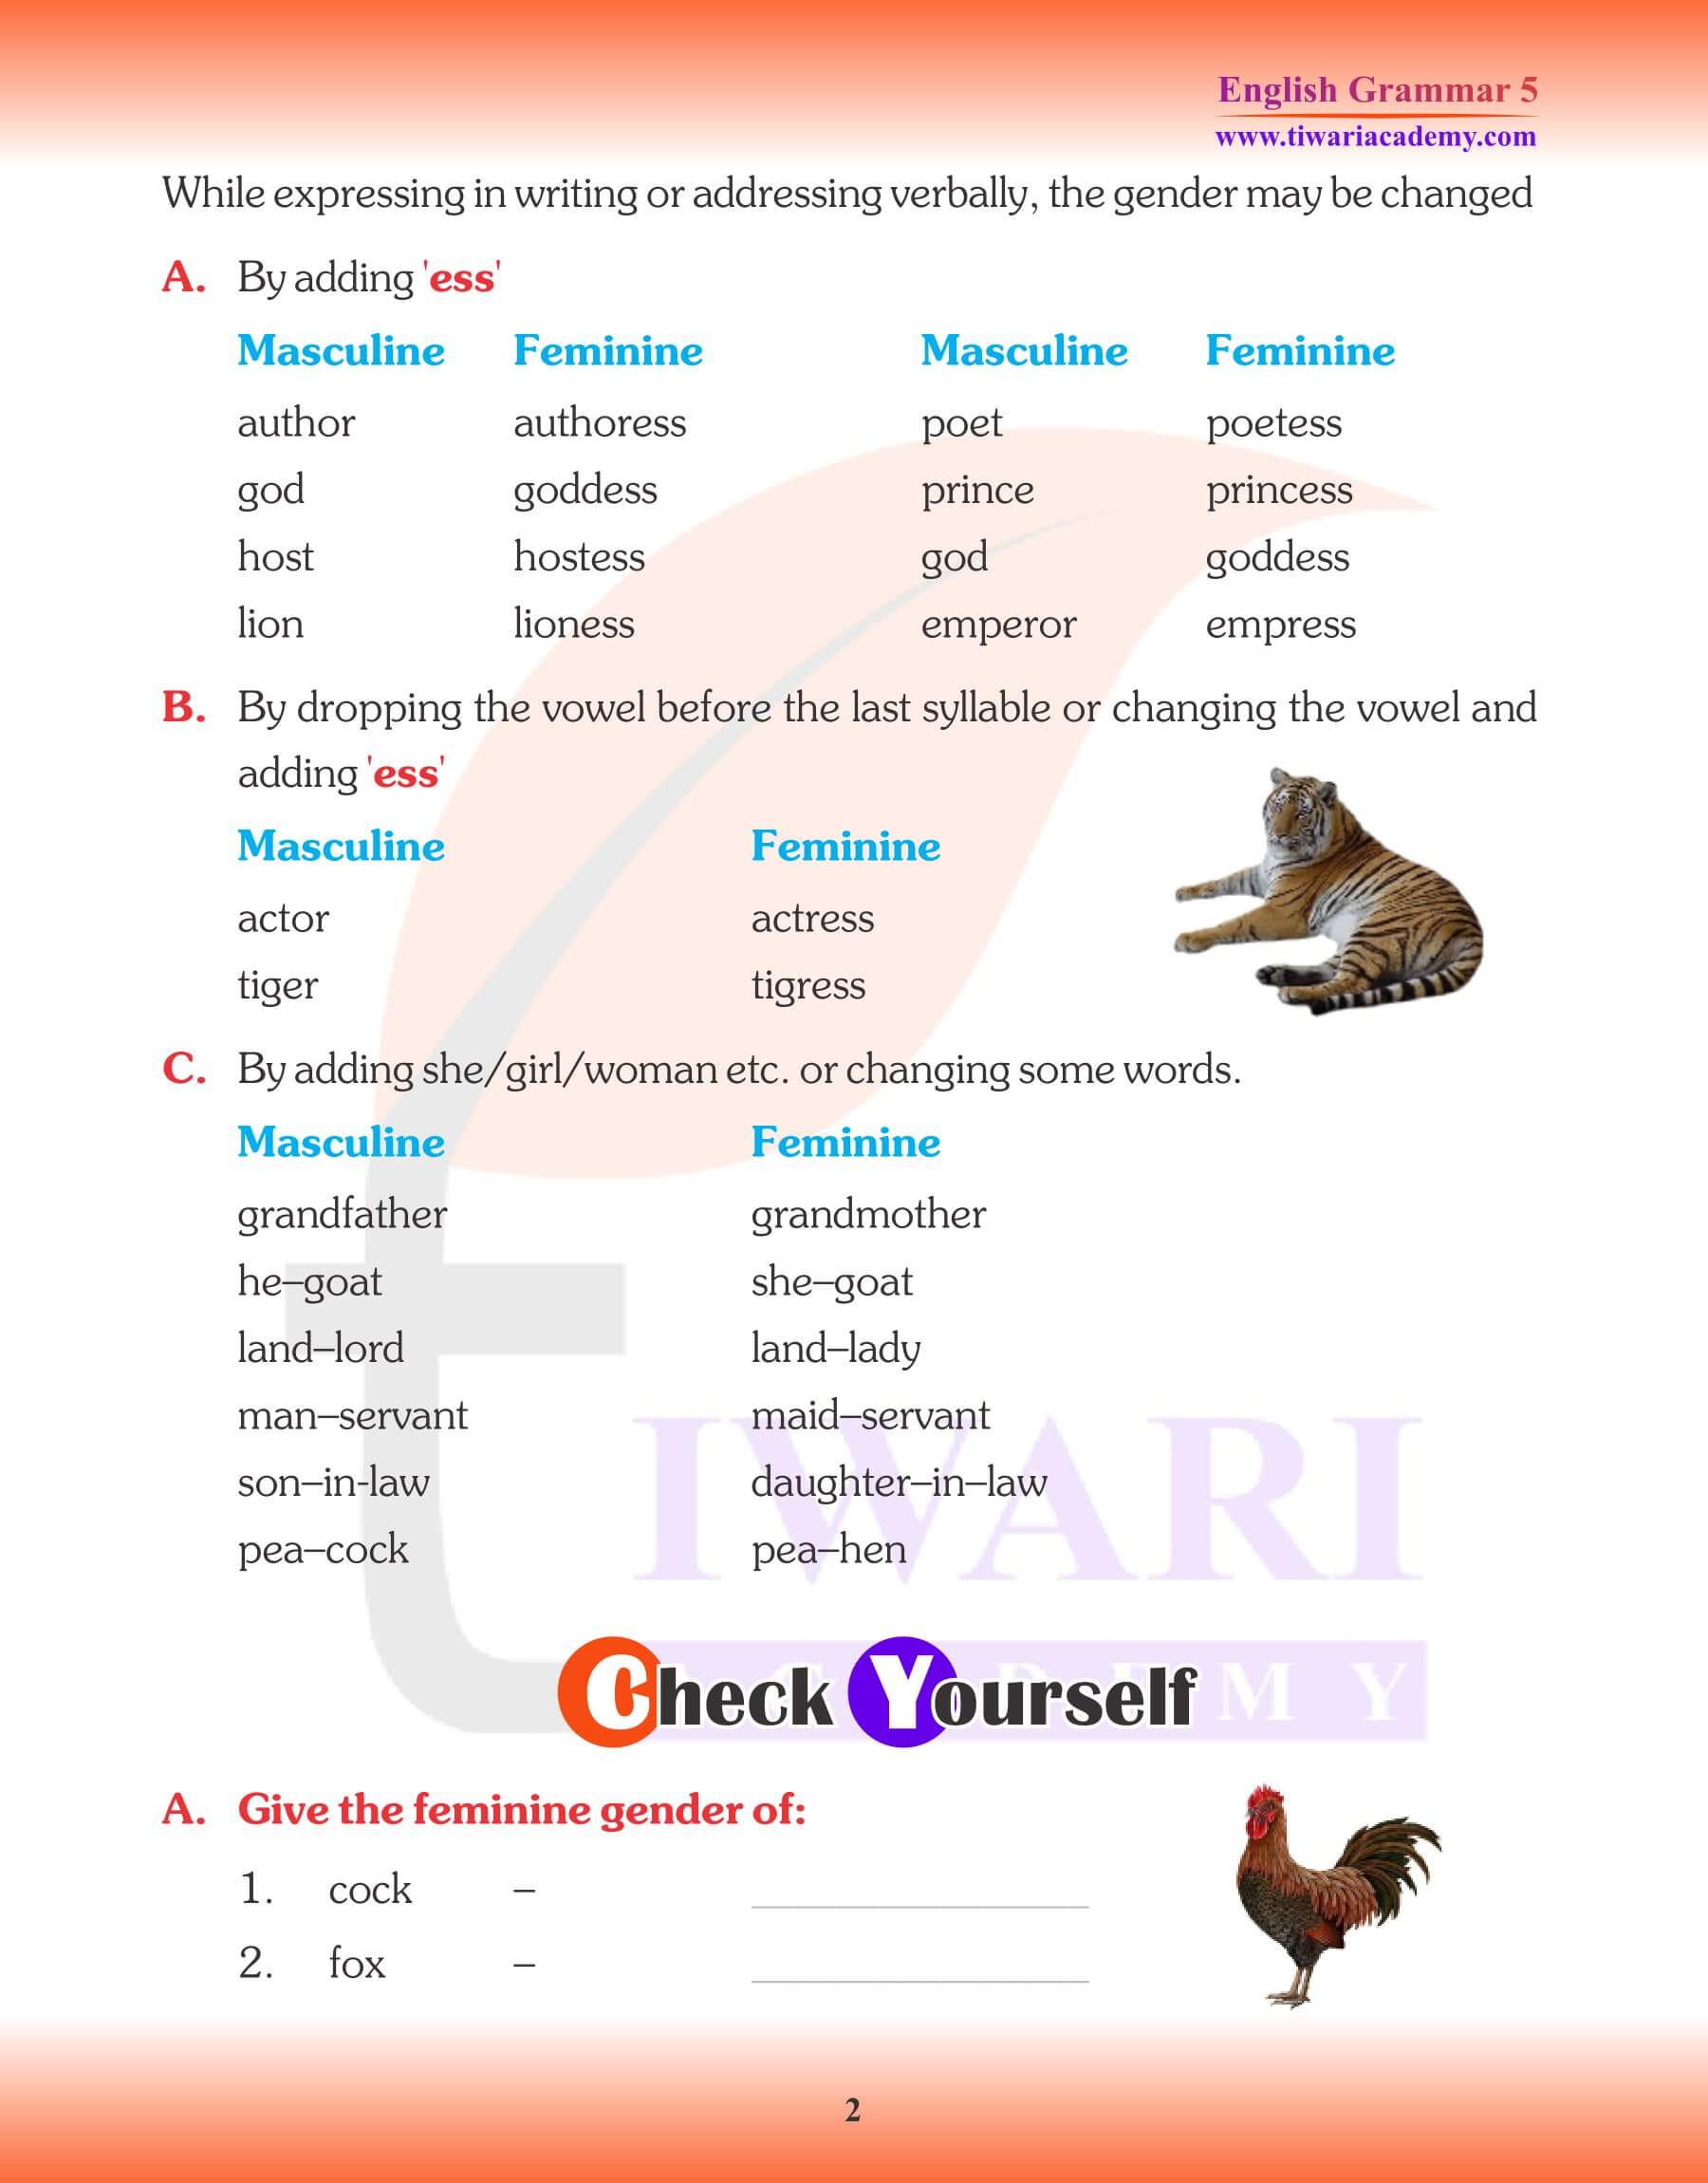 Class 5 English Grammar Noun Gender Assignments